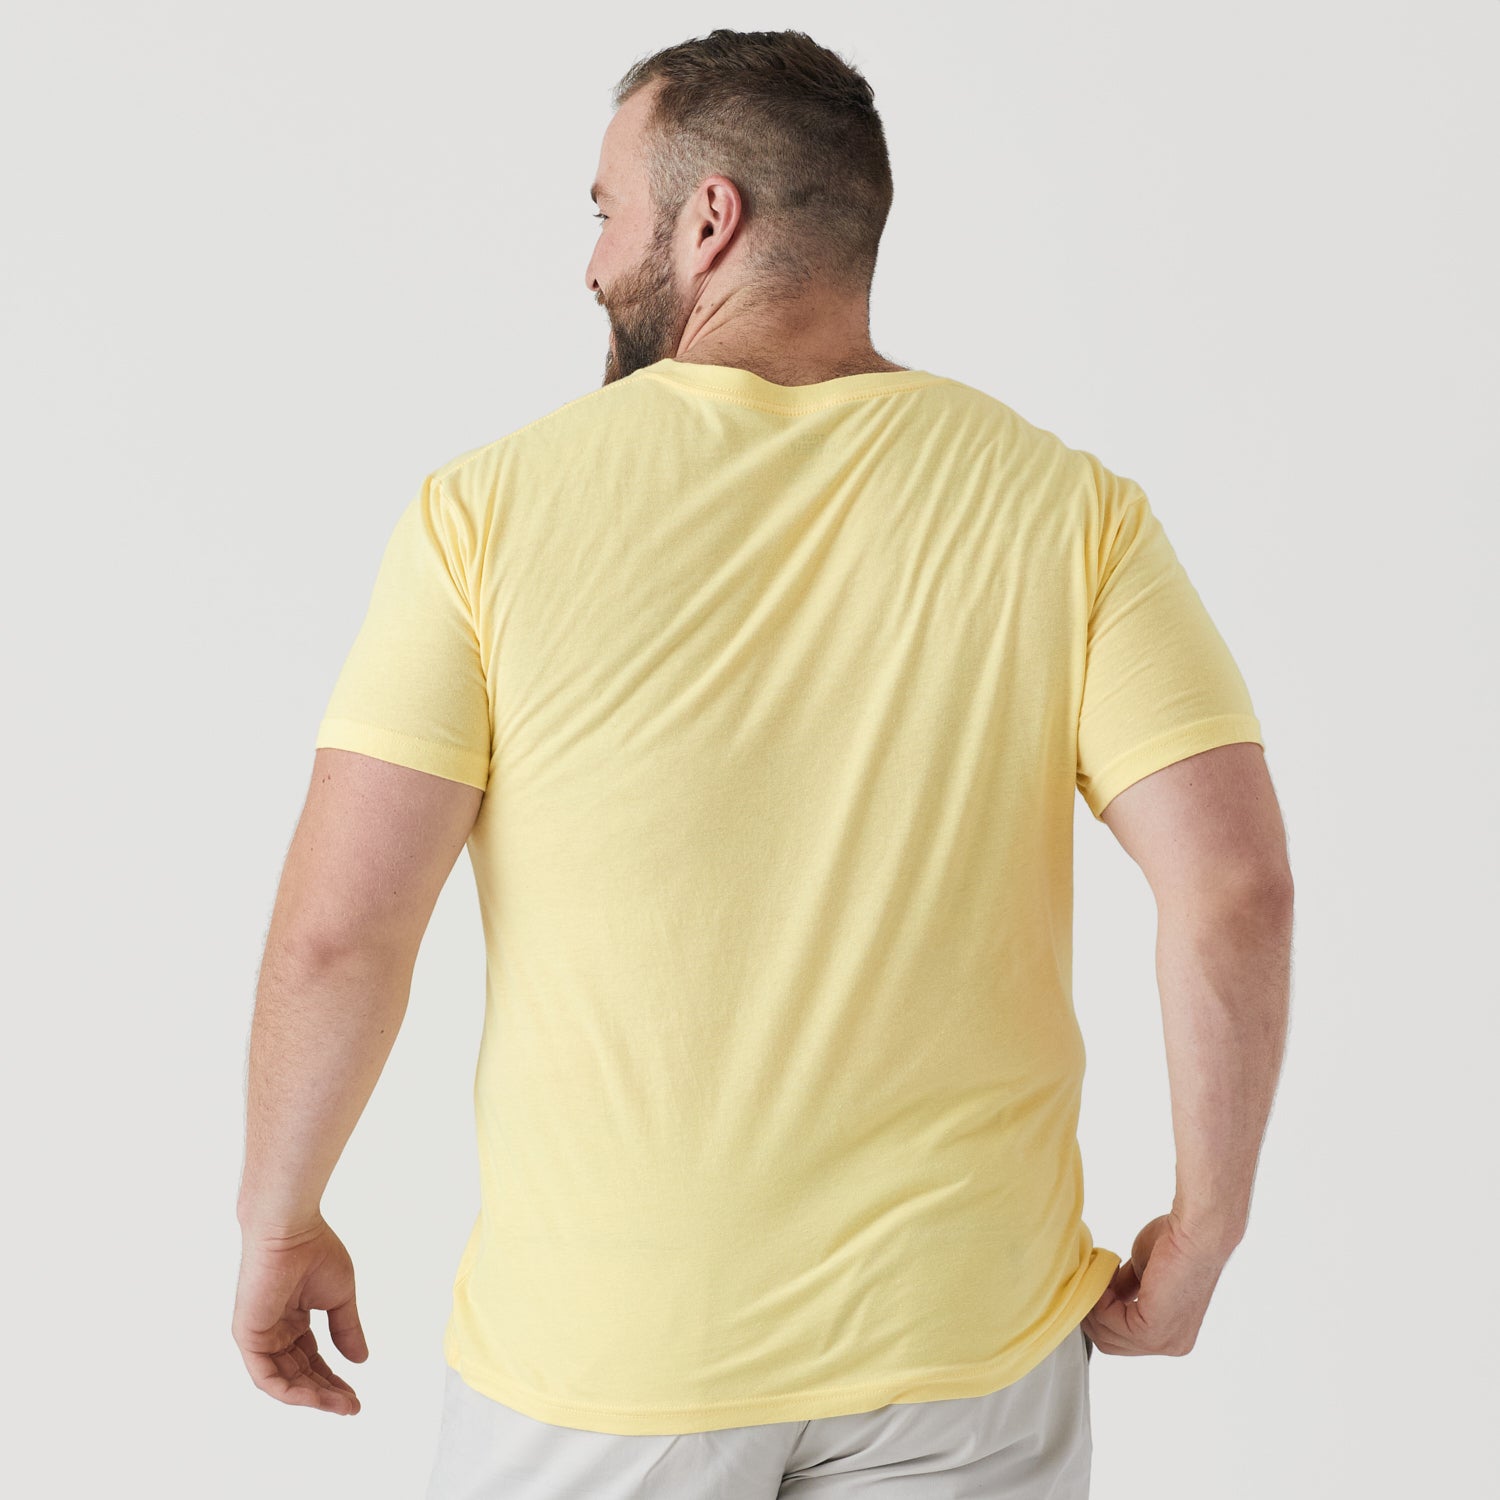 Mellow Yellow V-Neck T-Shirt